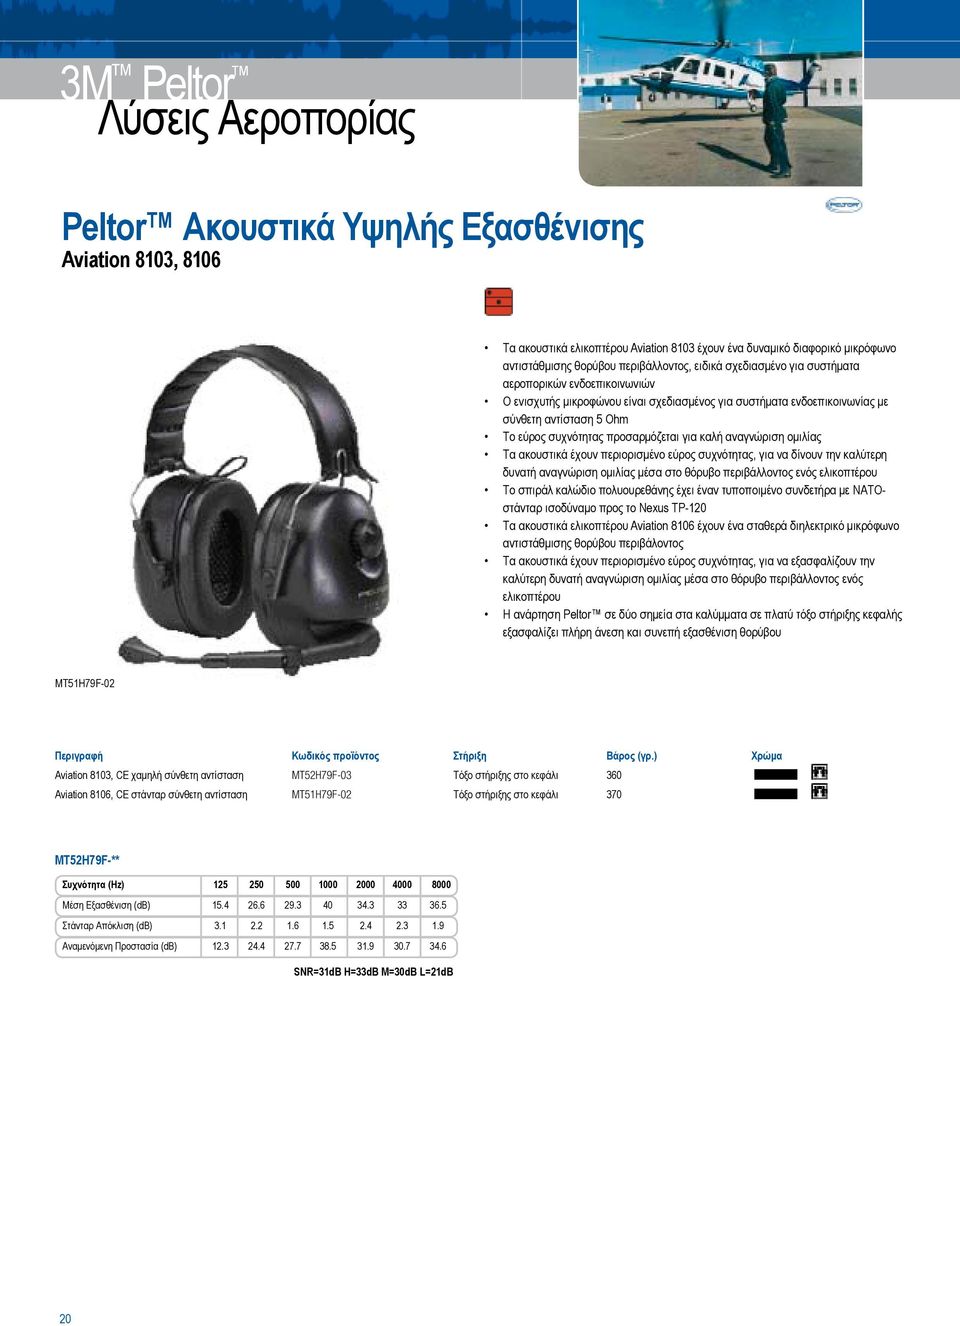 καλή αναγνώριση ομιλίας Τα ακουστικά έχουν περιορισμένο εύρος συχνότητας, για να δίνουν την καλύτερη δυνατή αναγνώριση ομιλίας μέσα στο θόρυβο περιβάλλοντος ενός ελικοπτέρου Το σπιράλ καλώδιο